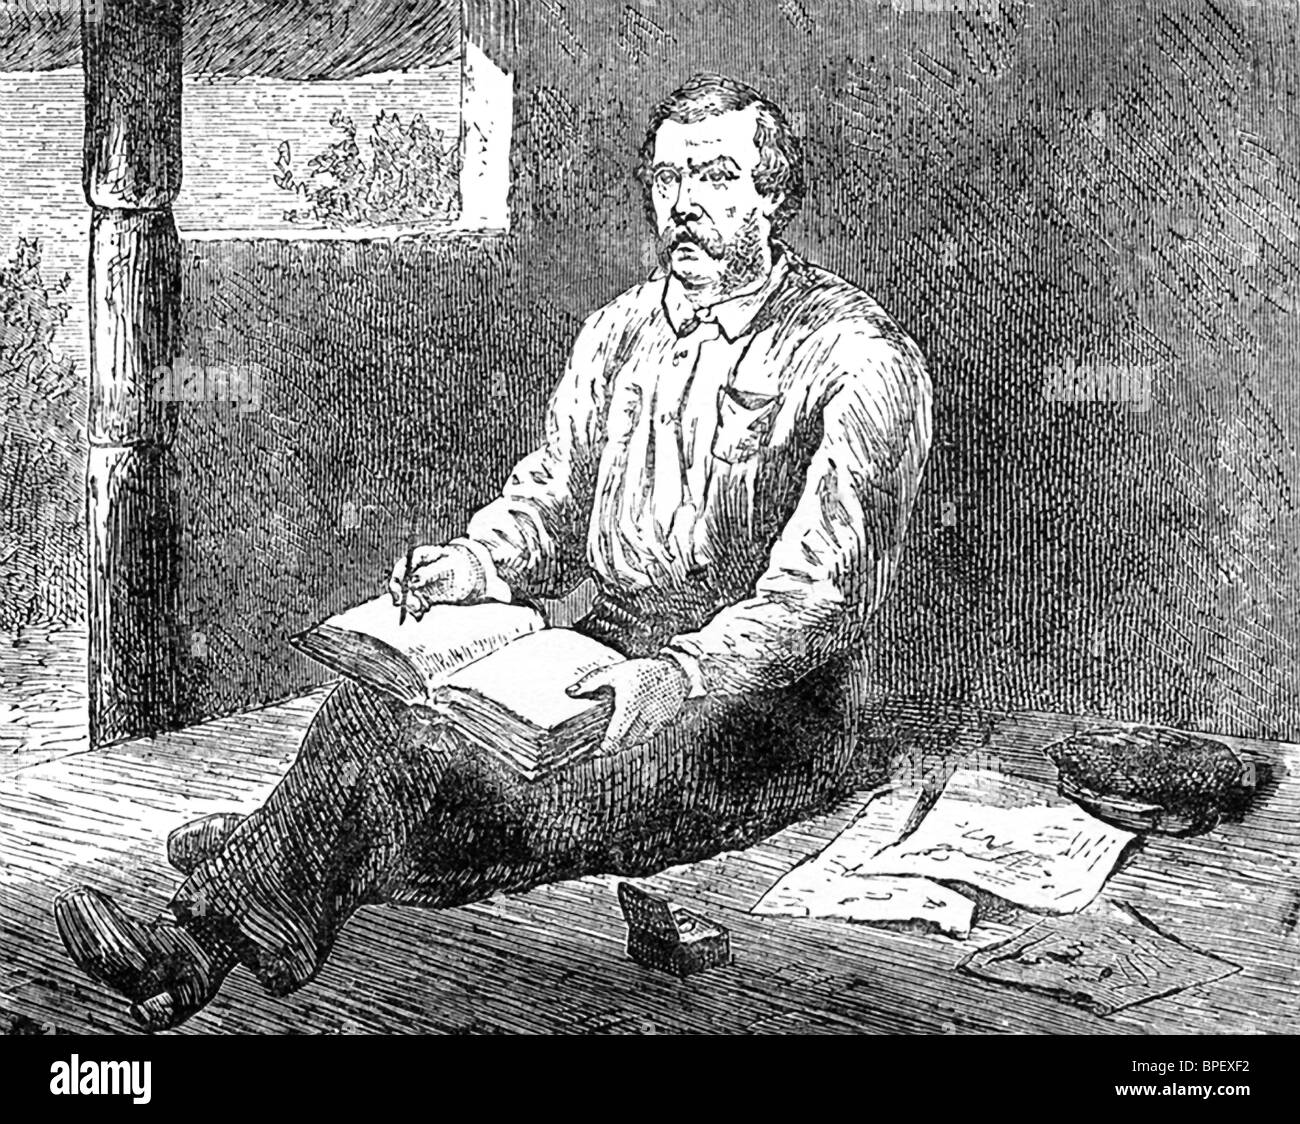 L'explorateur britannique Henry Morton Stanley fait ce croquis de David Livingstone, missionnaire et explorateur écossais en Afrique. Banque D'Images